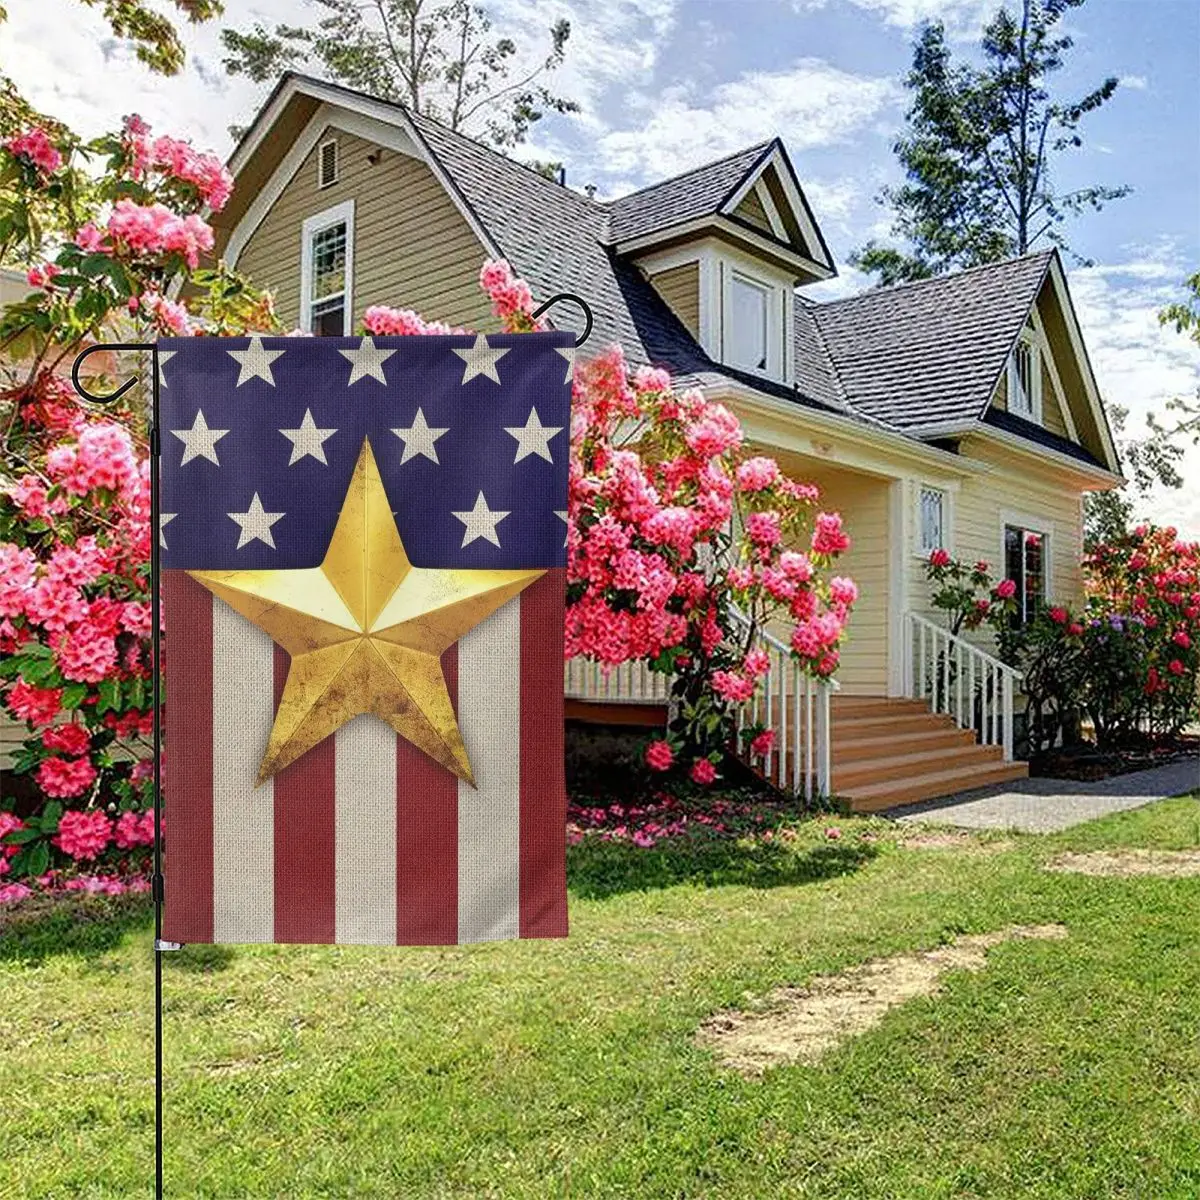 

America Forever 4 июля-открытый декоративный День Независимости патриотические звезды и полосы США Золотая Звезда Американский Садовый флаг